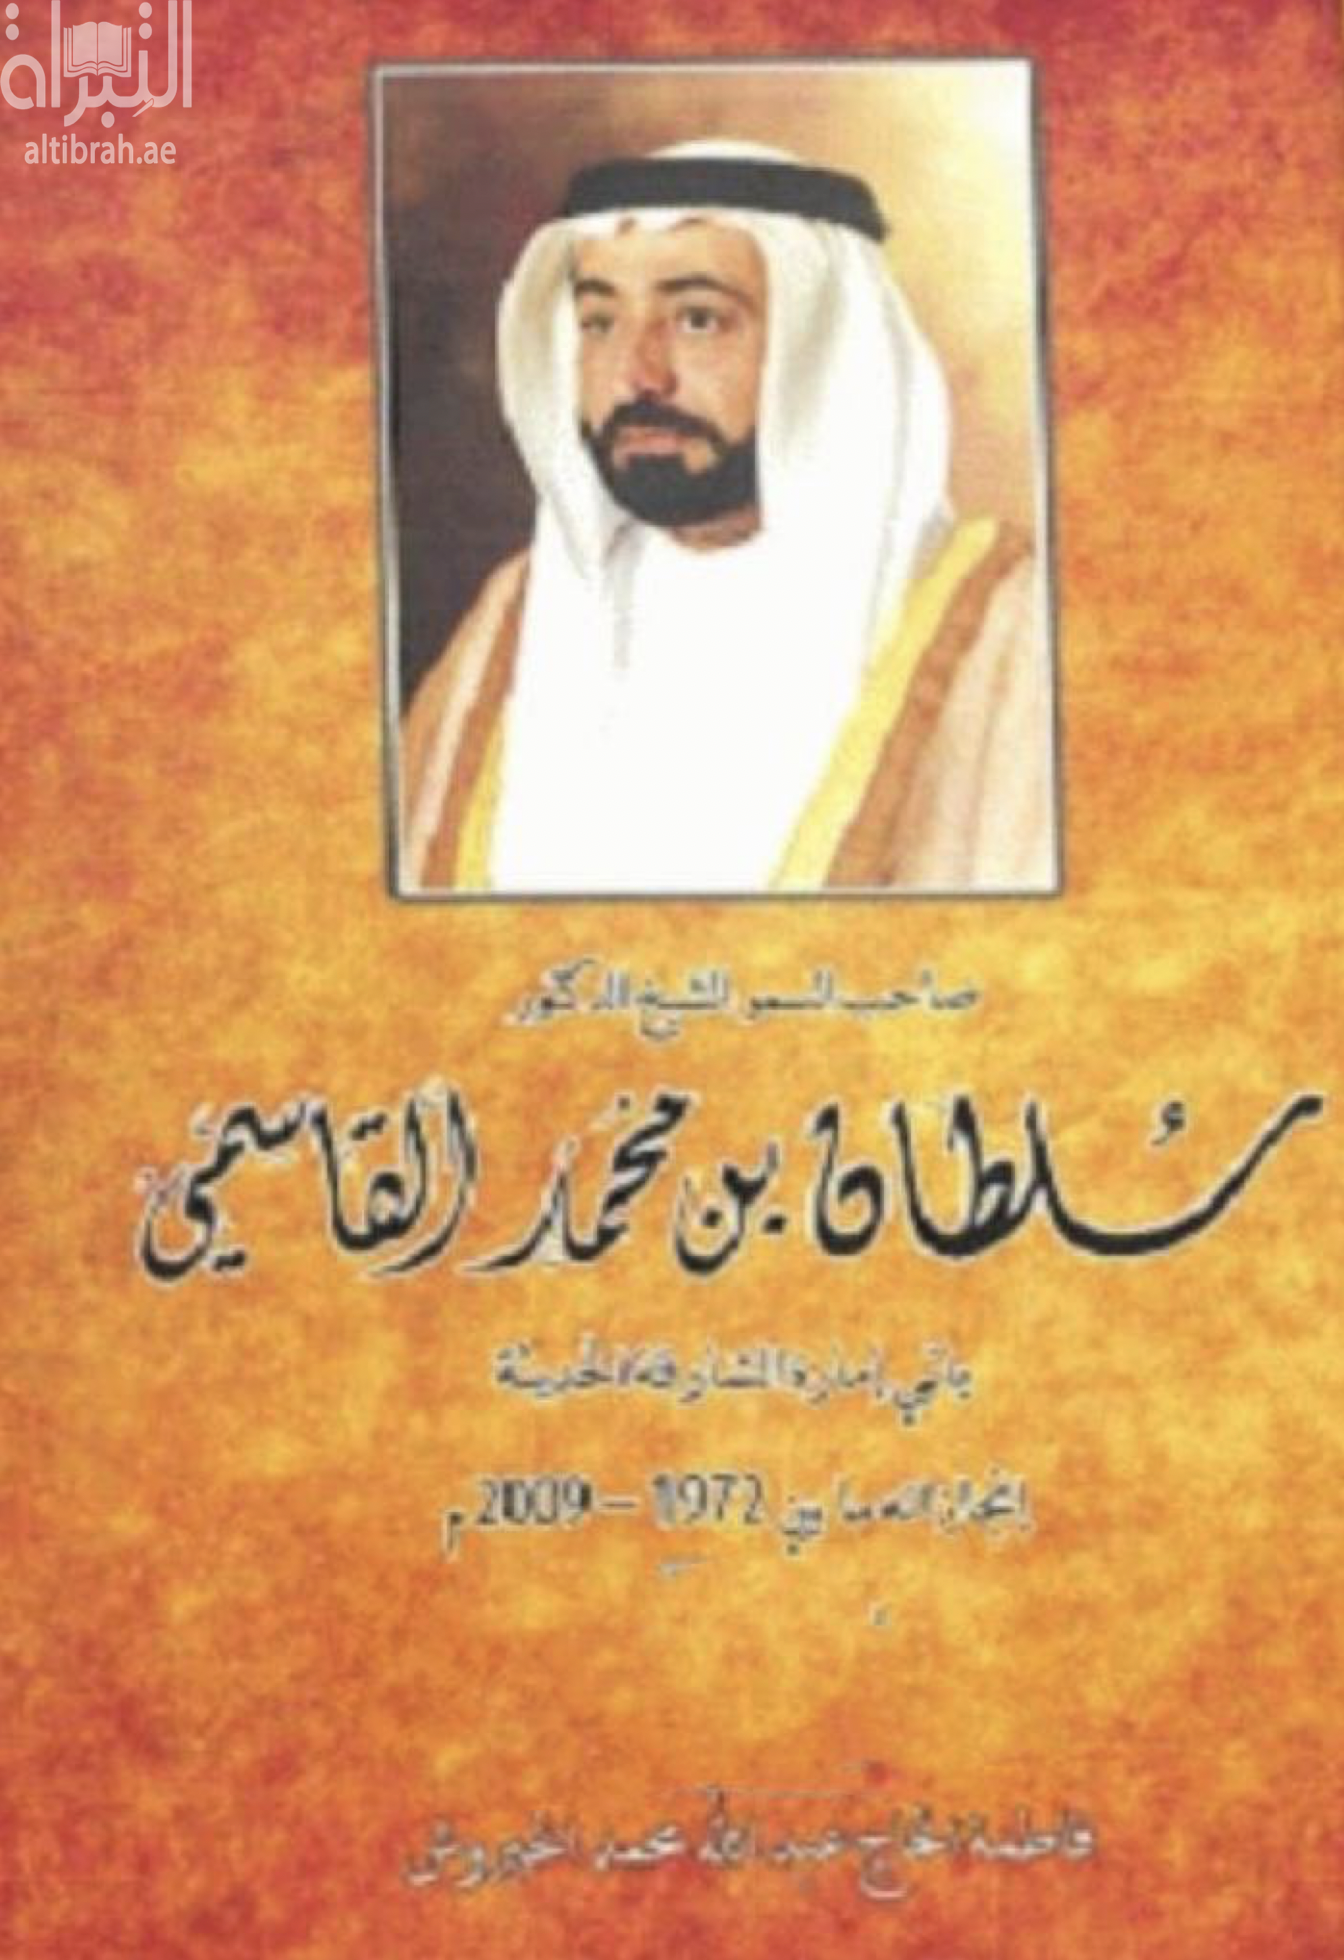 كتاب صاحب السمو الشيخ الدكتور سلطان بن محمد القاسمي باني إمارة الشارقة الحديثة : إنجازاته ما بين 1972 م - 2009 م